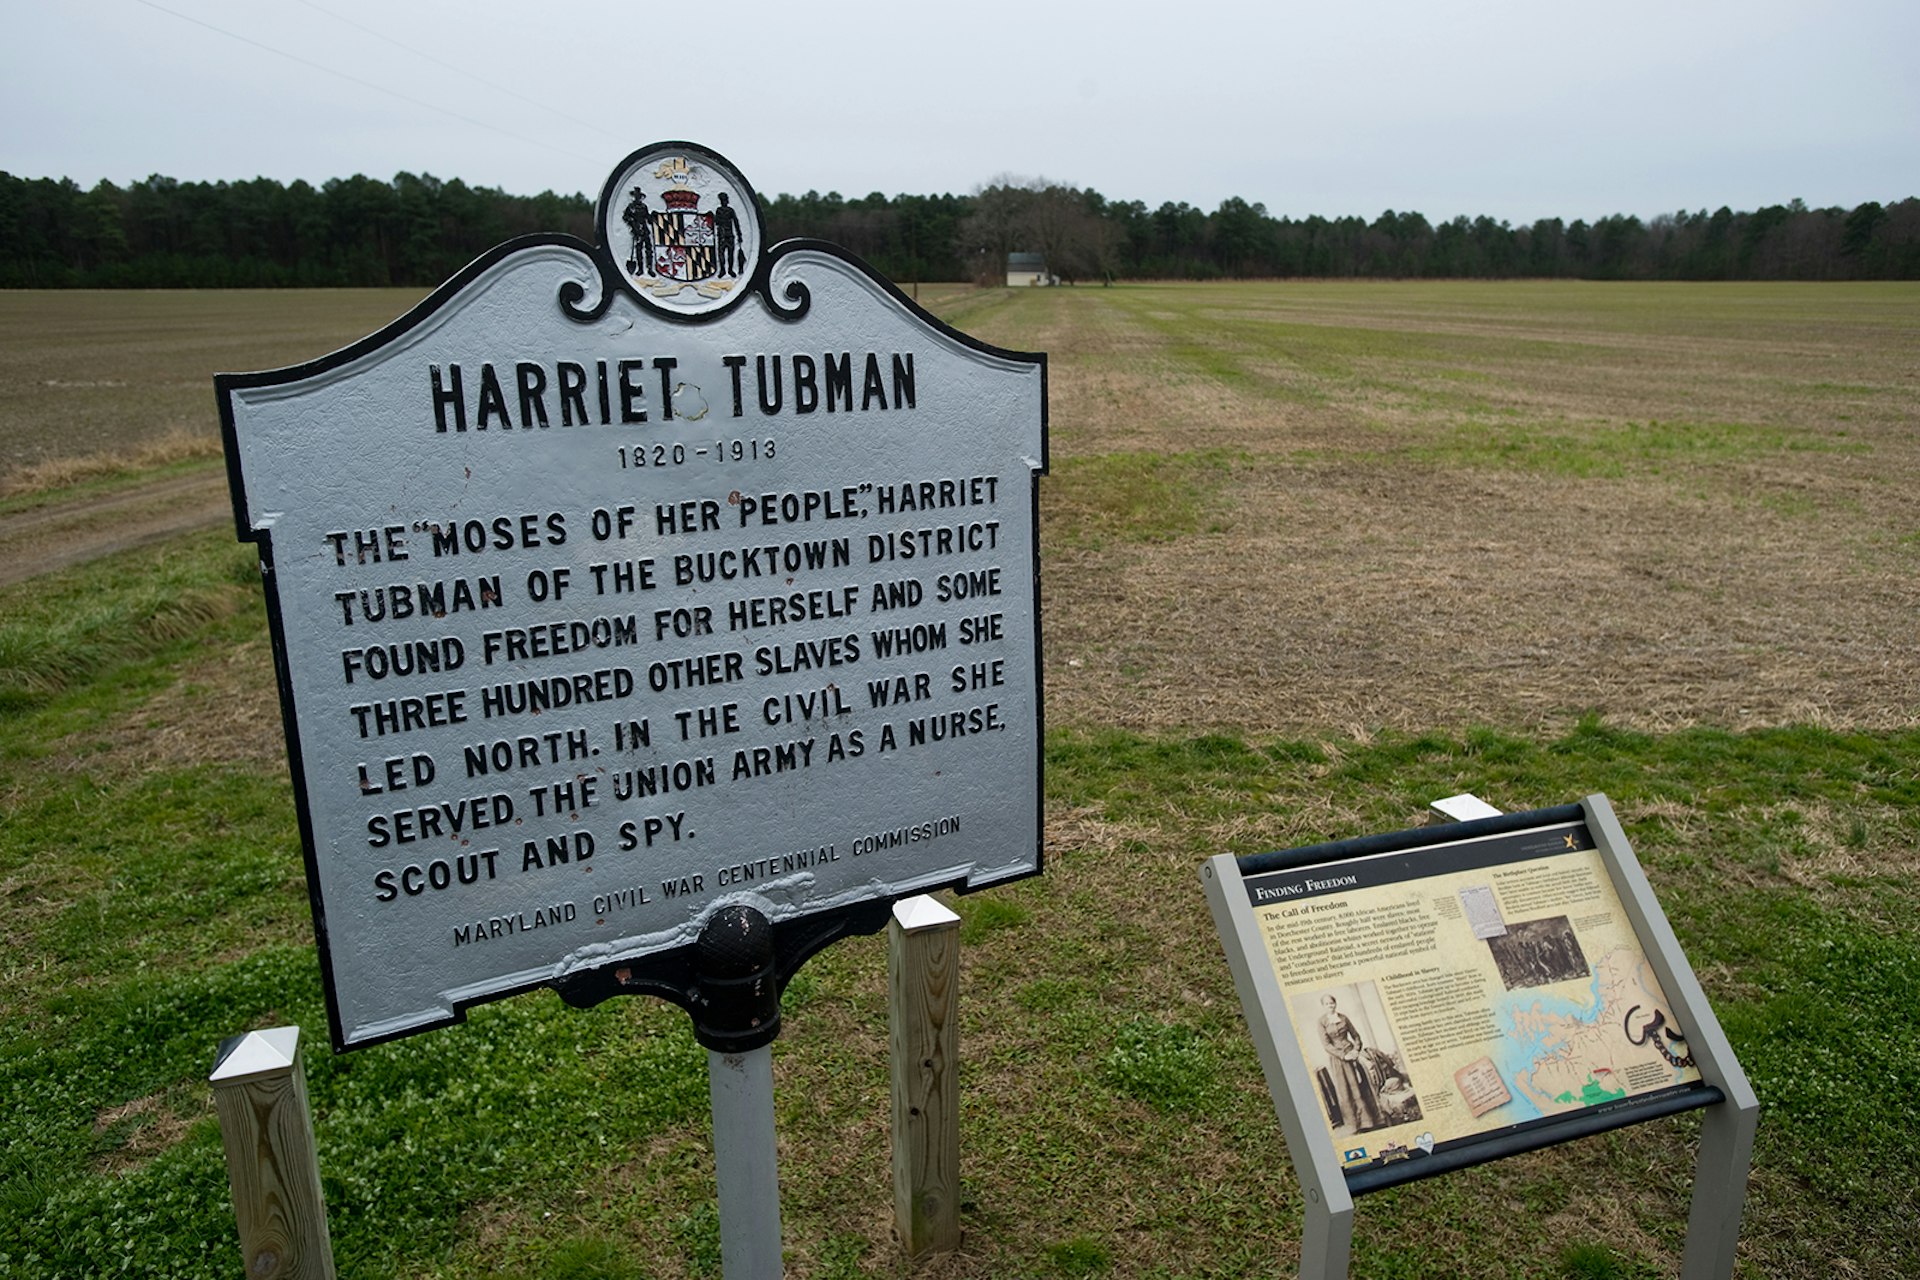 Historic sign describing Tubman's biography